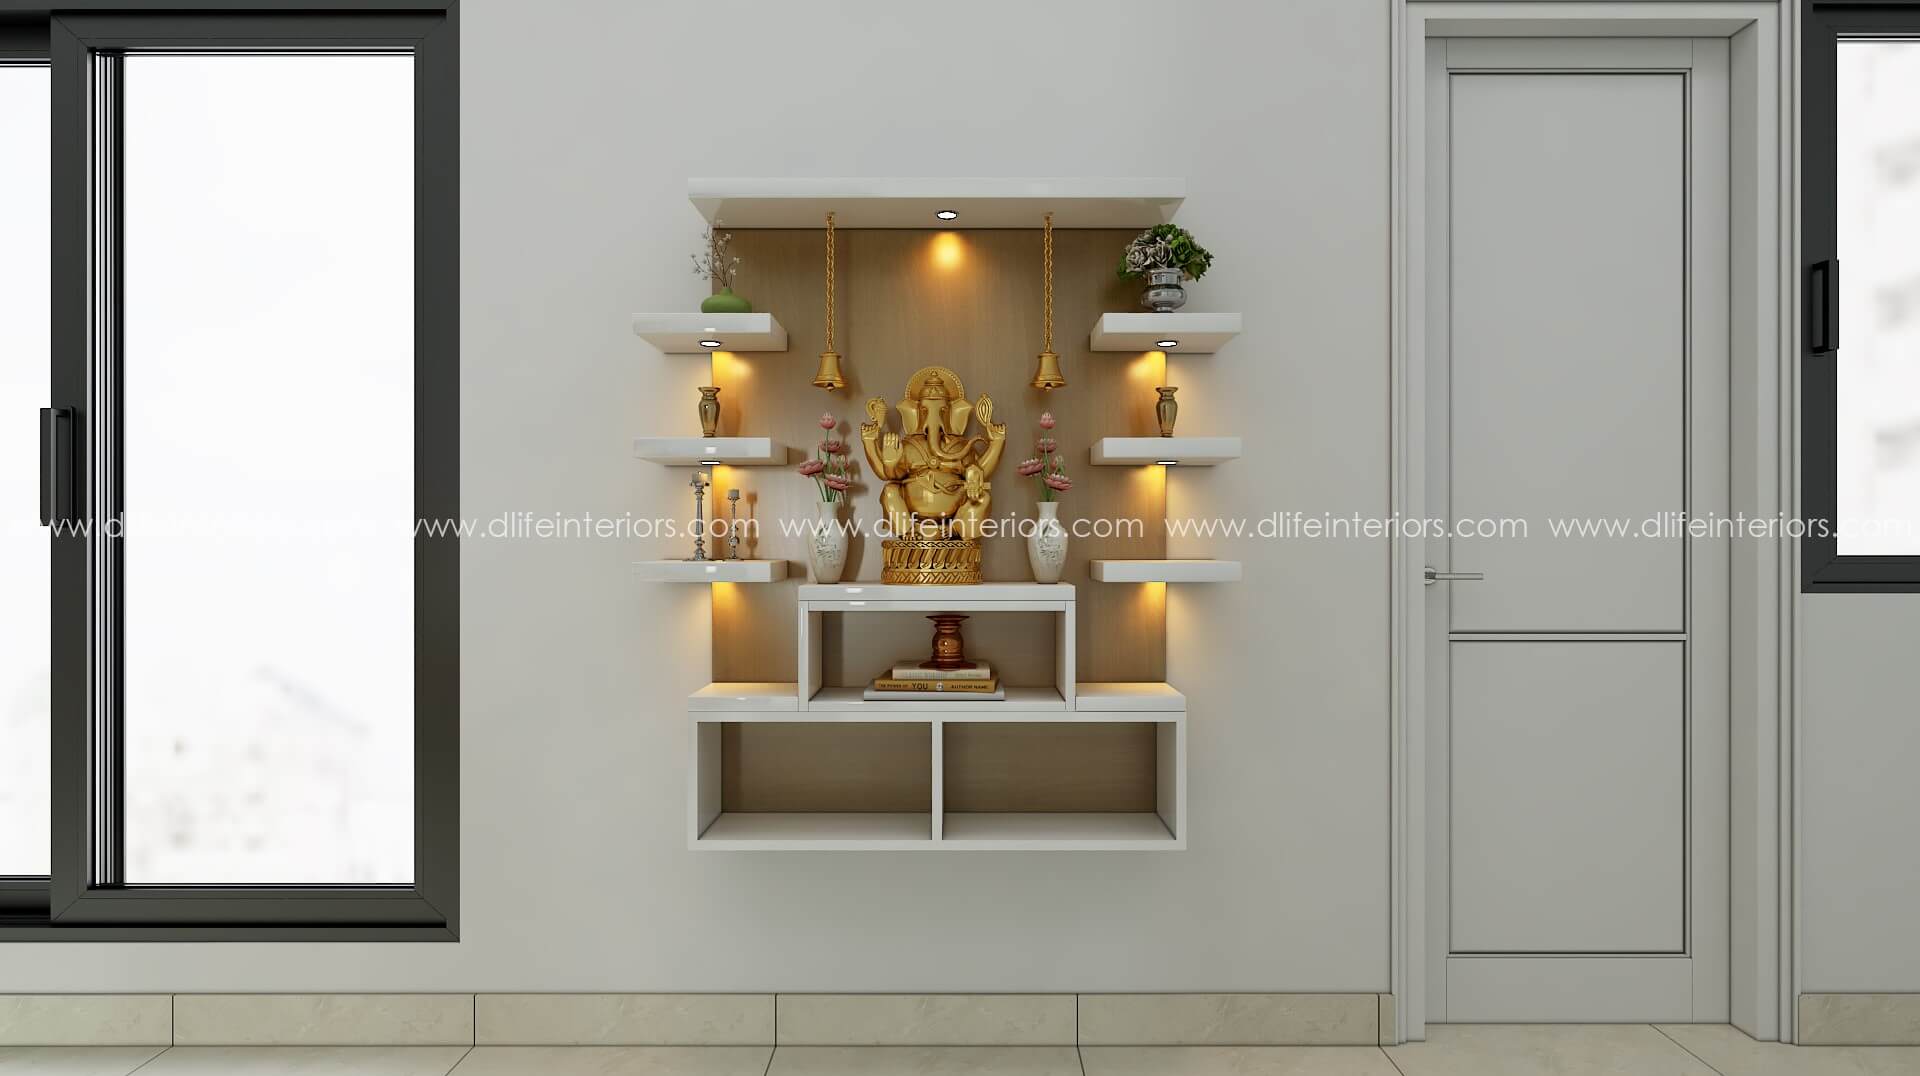 Prayer unit interior design in Calicut